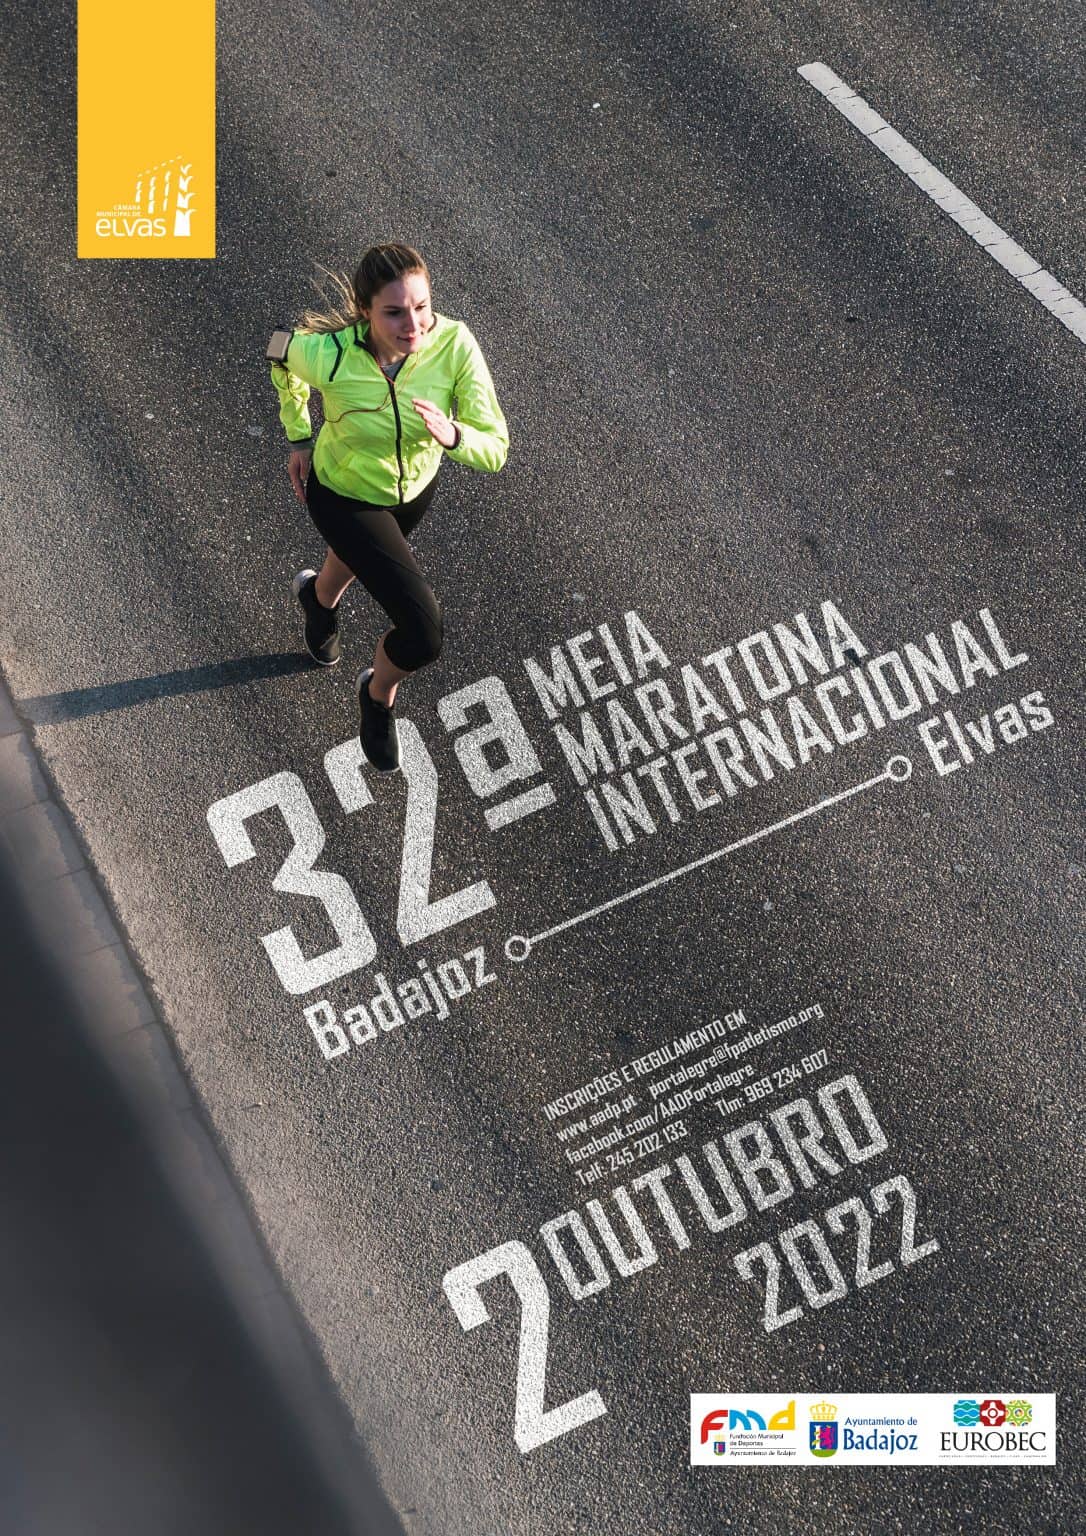 Meia maratona Elvas-Badajoz